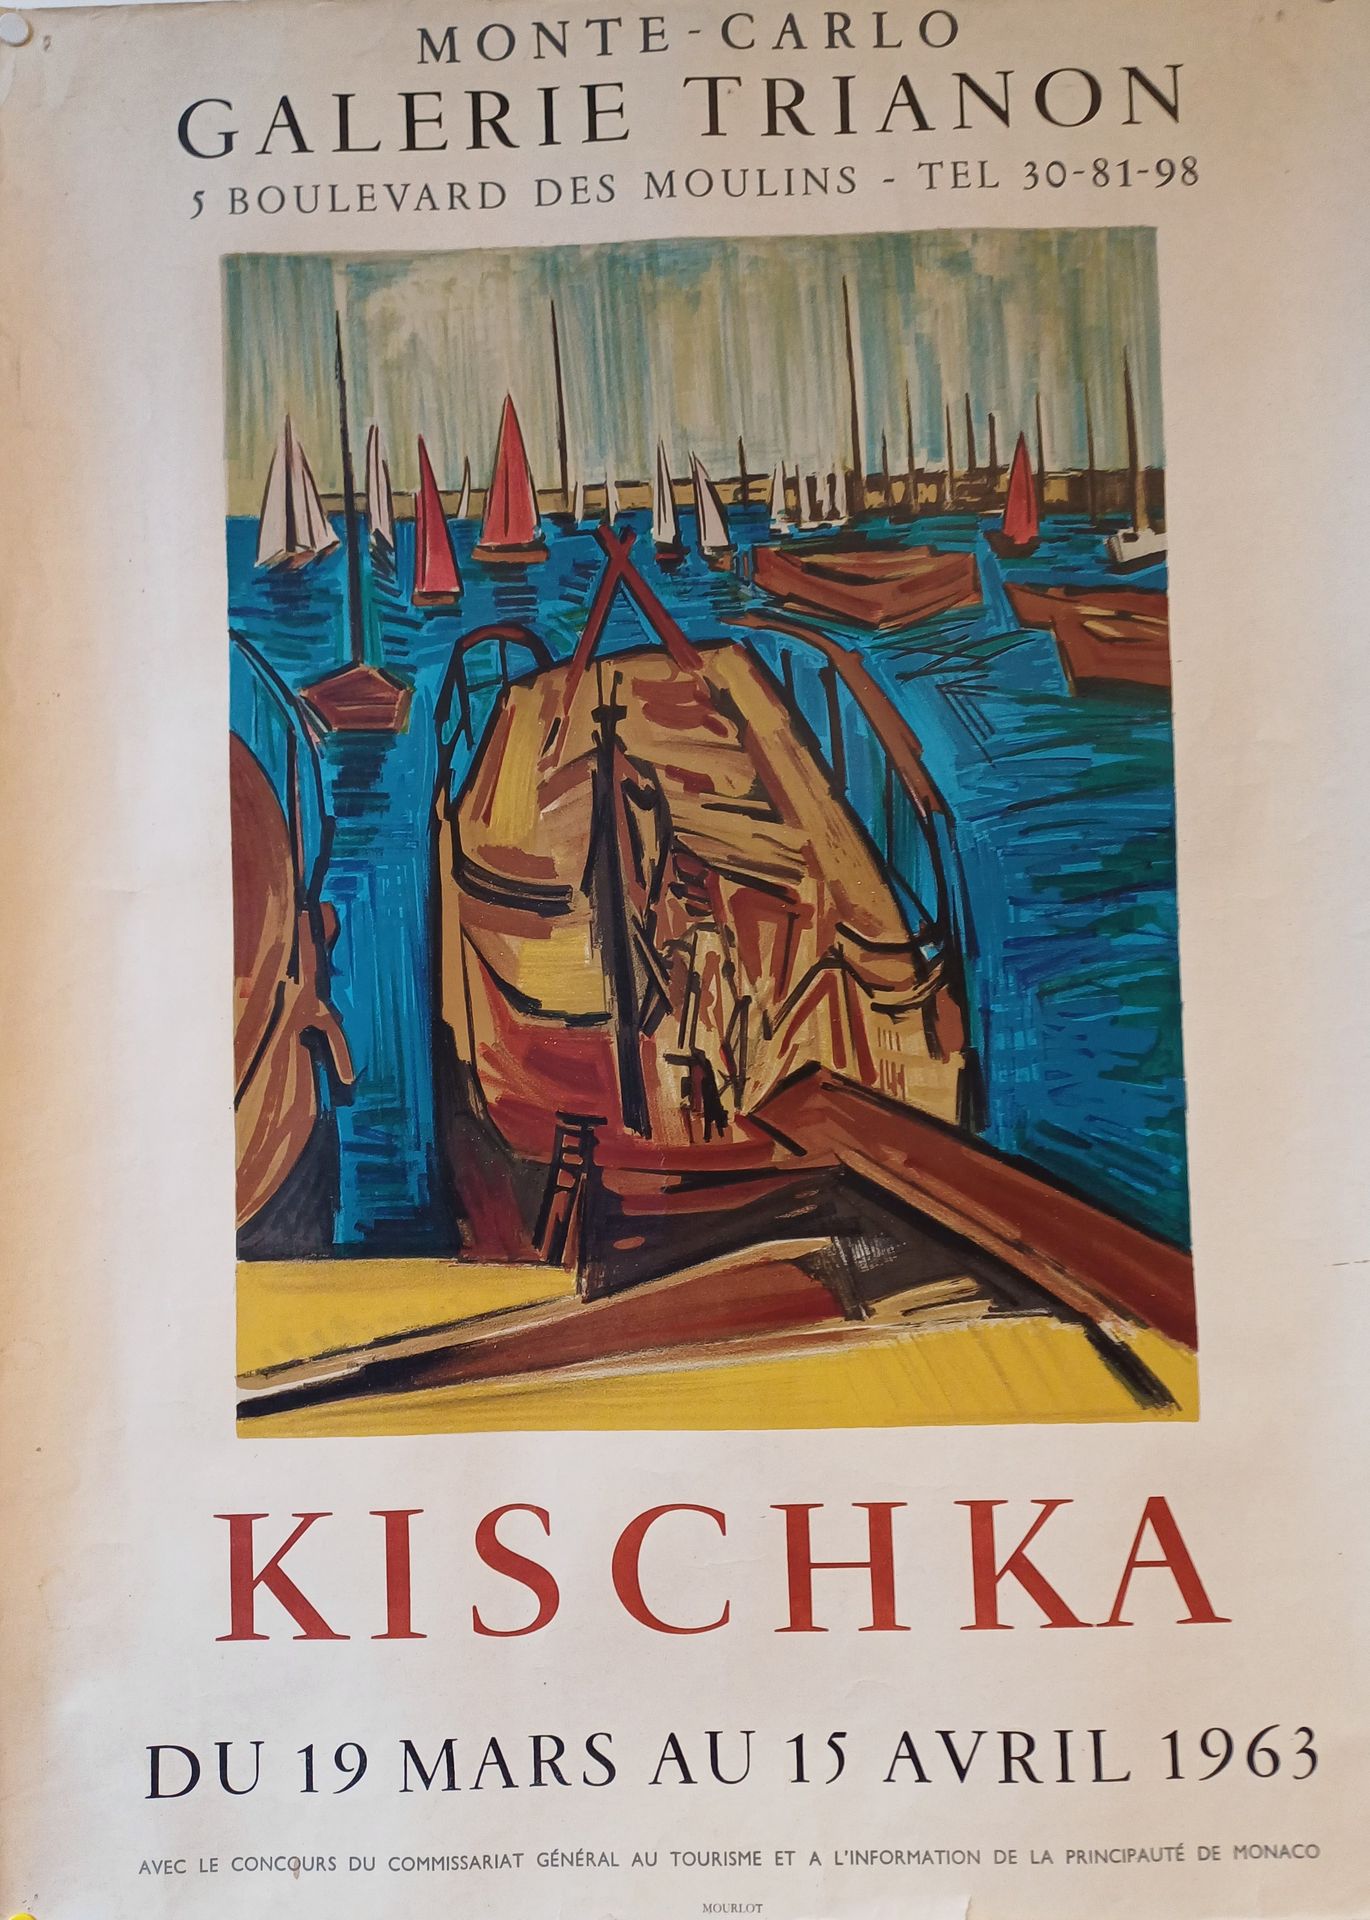 KISCHKA Kischka
Affiche
Monte Carlo Galerie Trianon 1963
65,5 x 48 cm Bon état